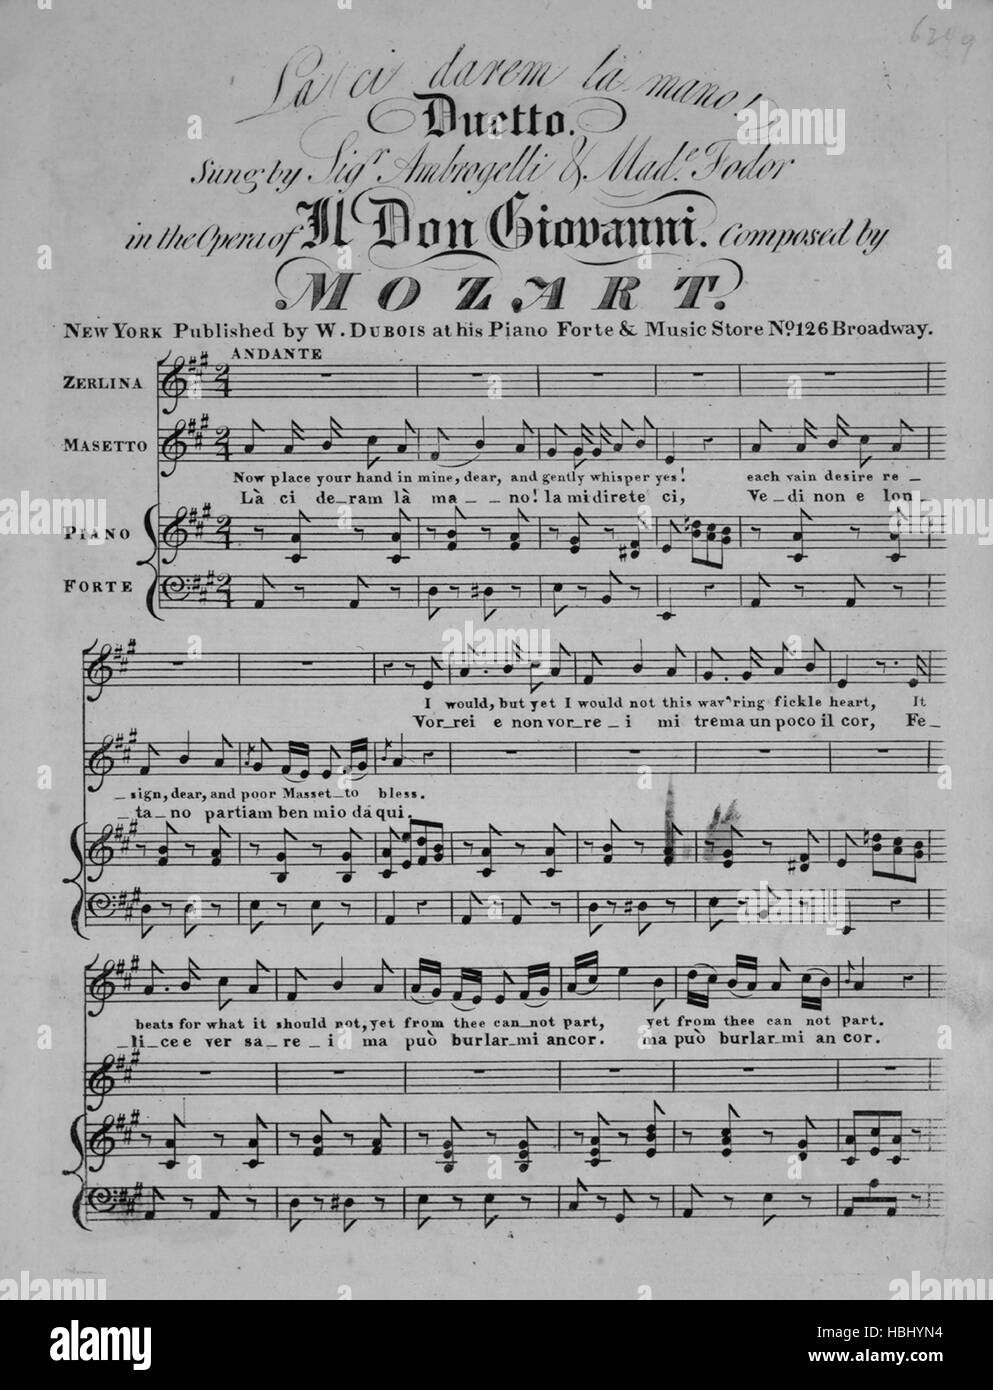 Sheet Music image de couverture de la chanson "La ci darem la mano ! Duetto  [Italien et Anglais]', avec l'auteur original "Lecture notes composées par  Mozart', United States, 1900. L'éditeur est répertorié